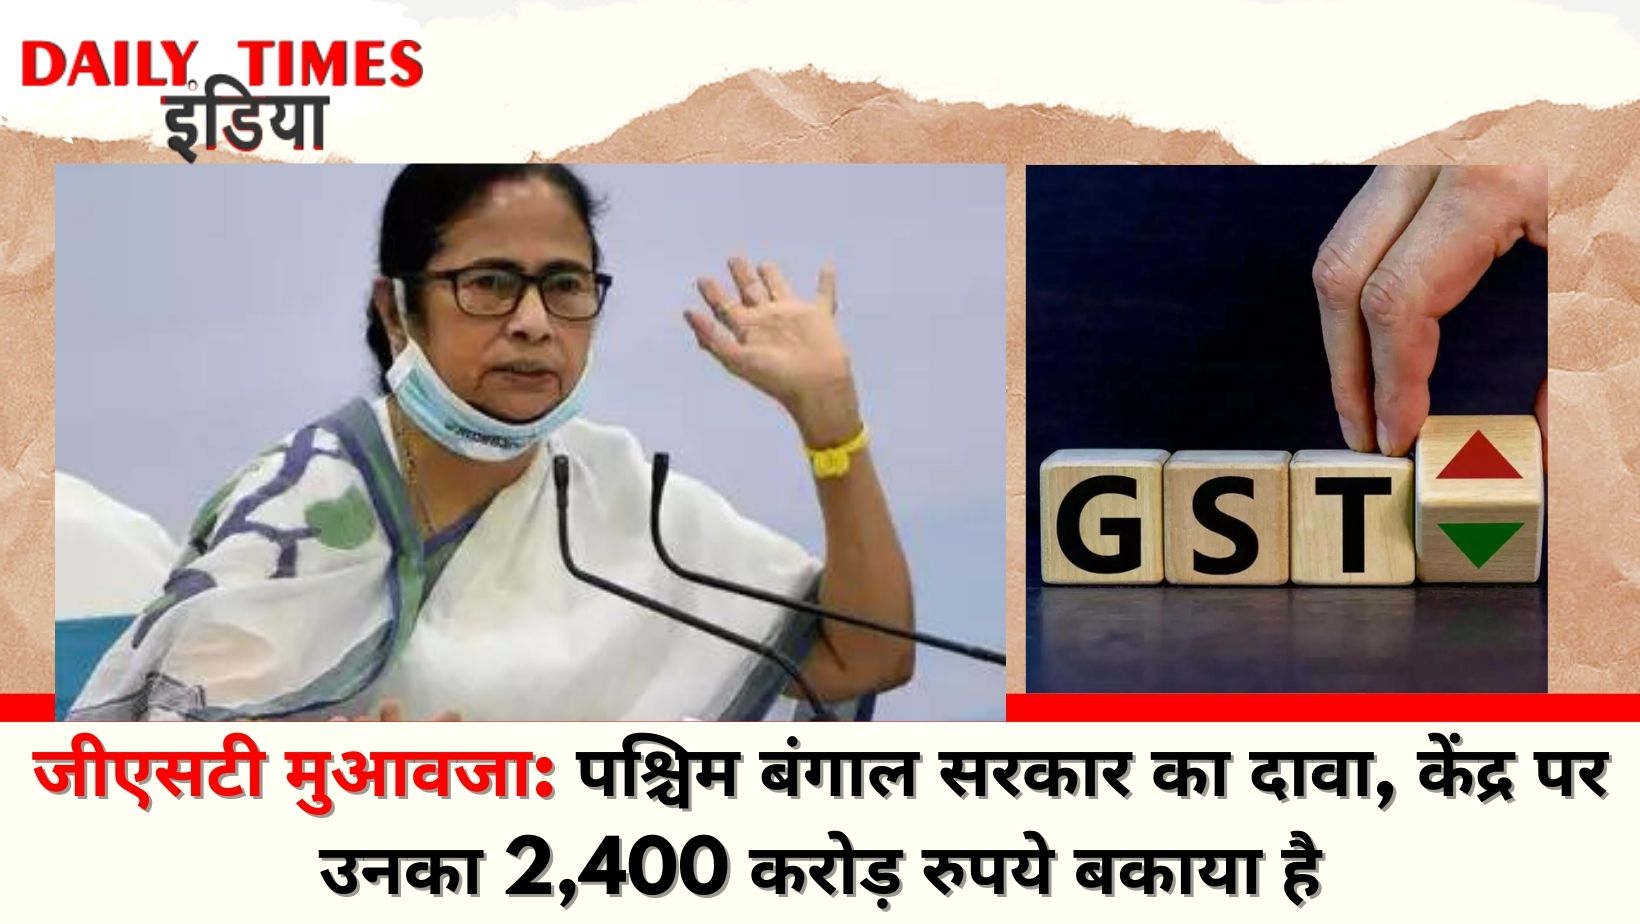 GST compensation: West Bengal govt claims Centre, owes about Rs 2,400 crore